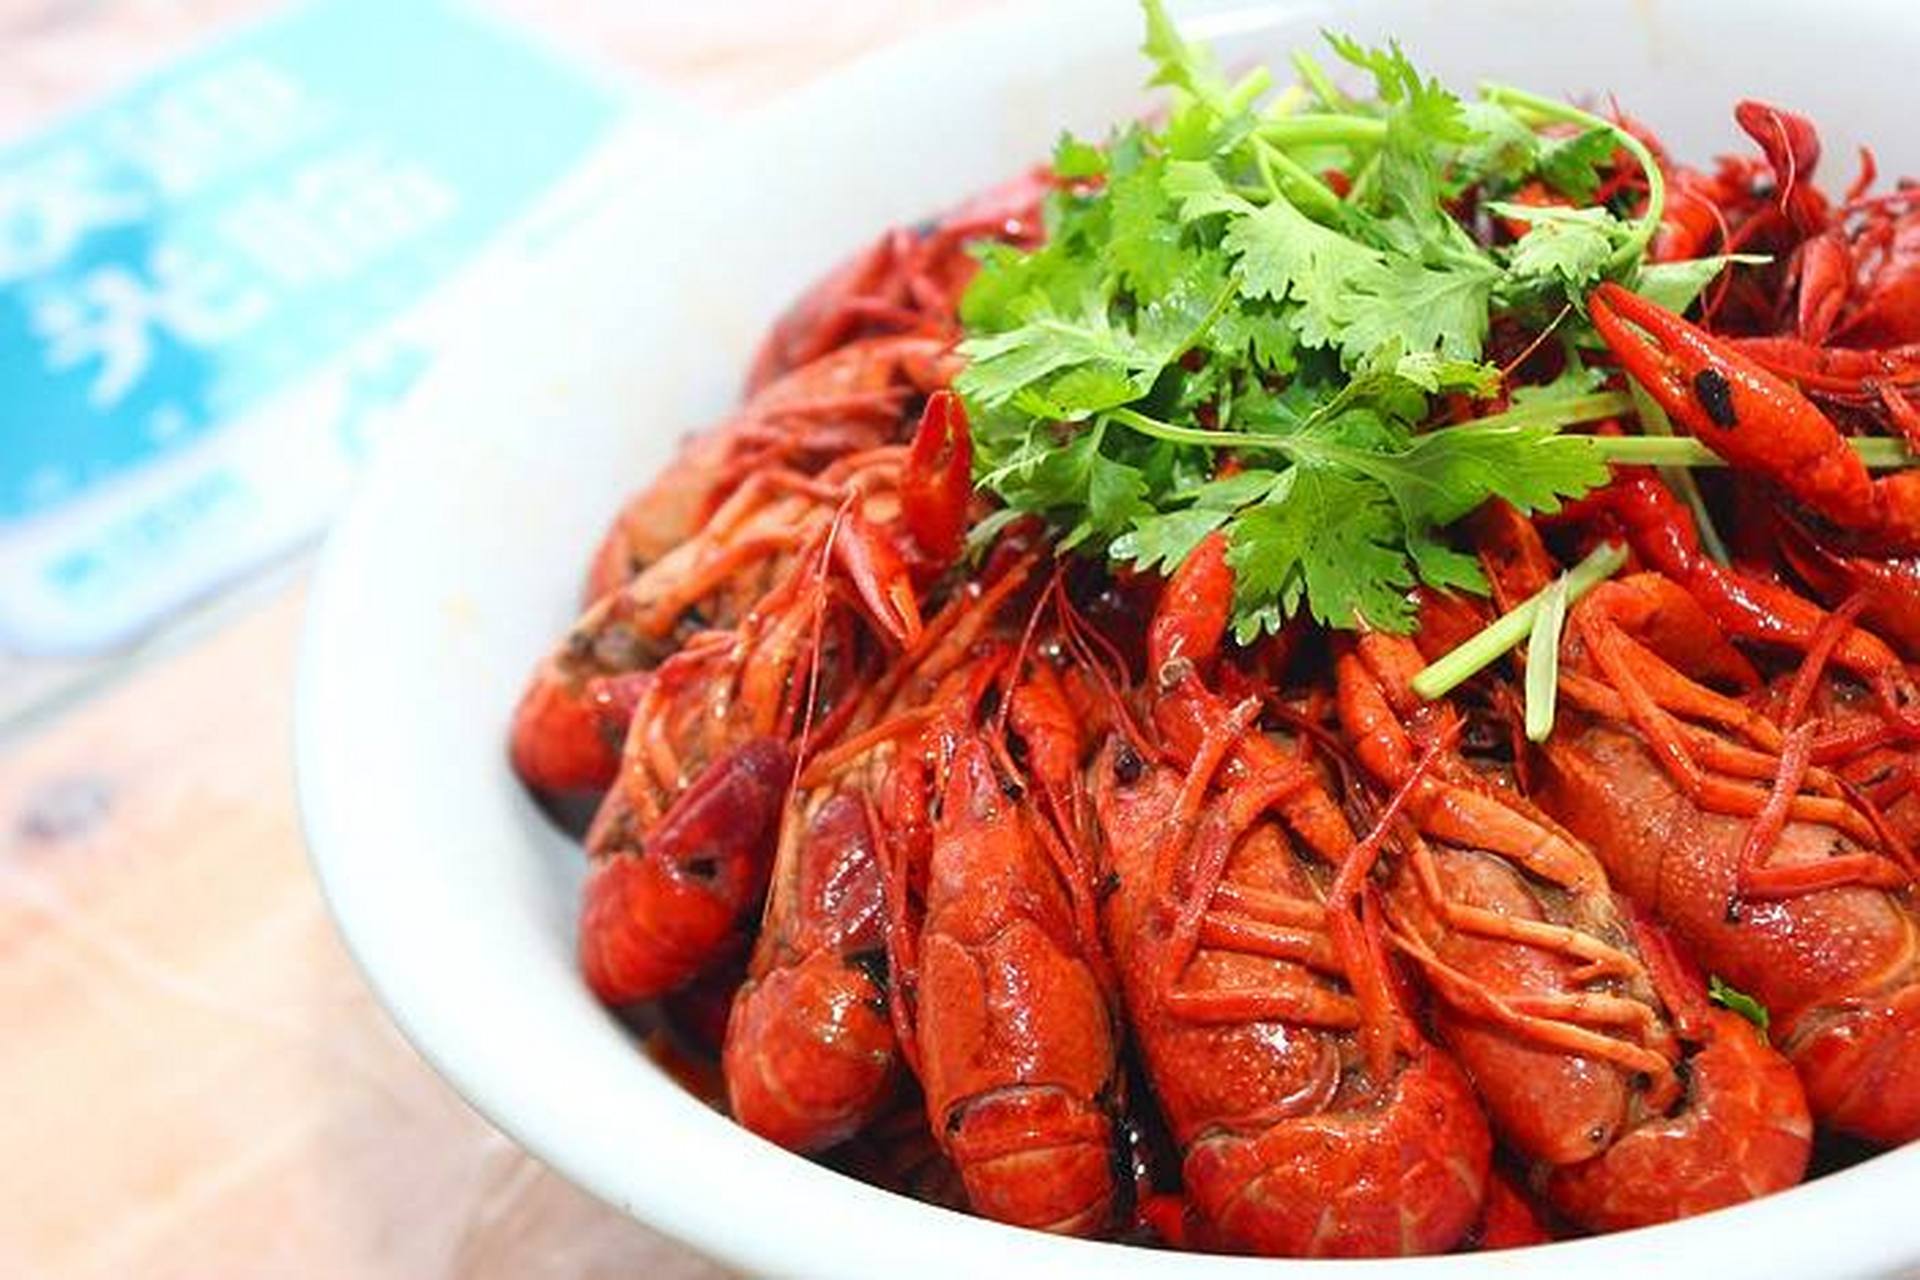 麻辣小龙虾又名口味虾,长沙口味虾,香辣小龙虾,是湖南著名的地方小吃